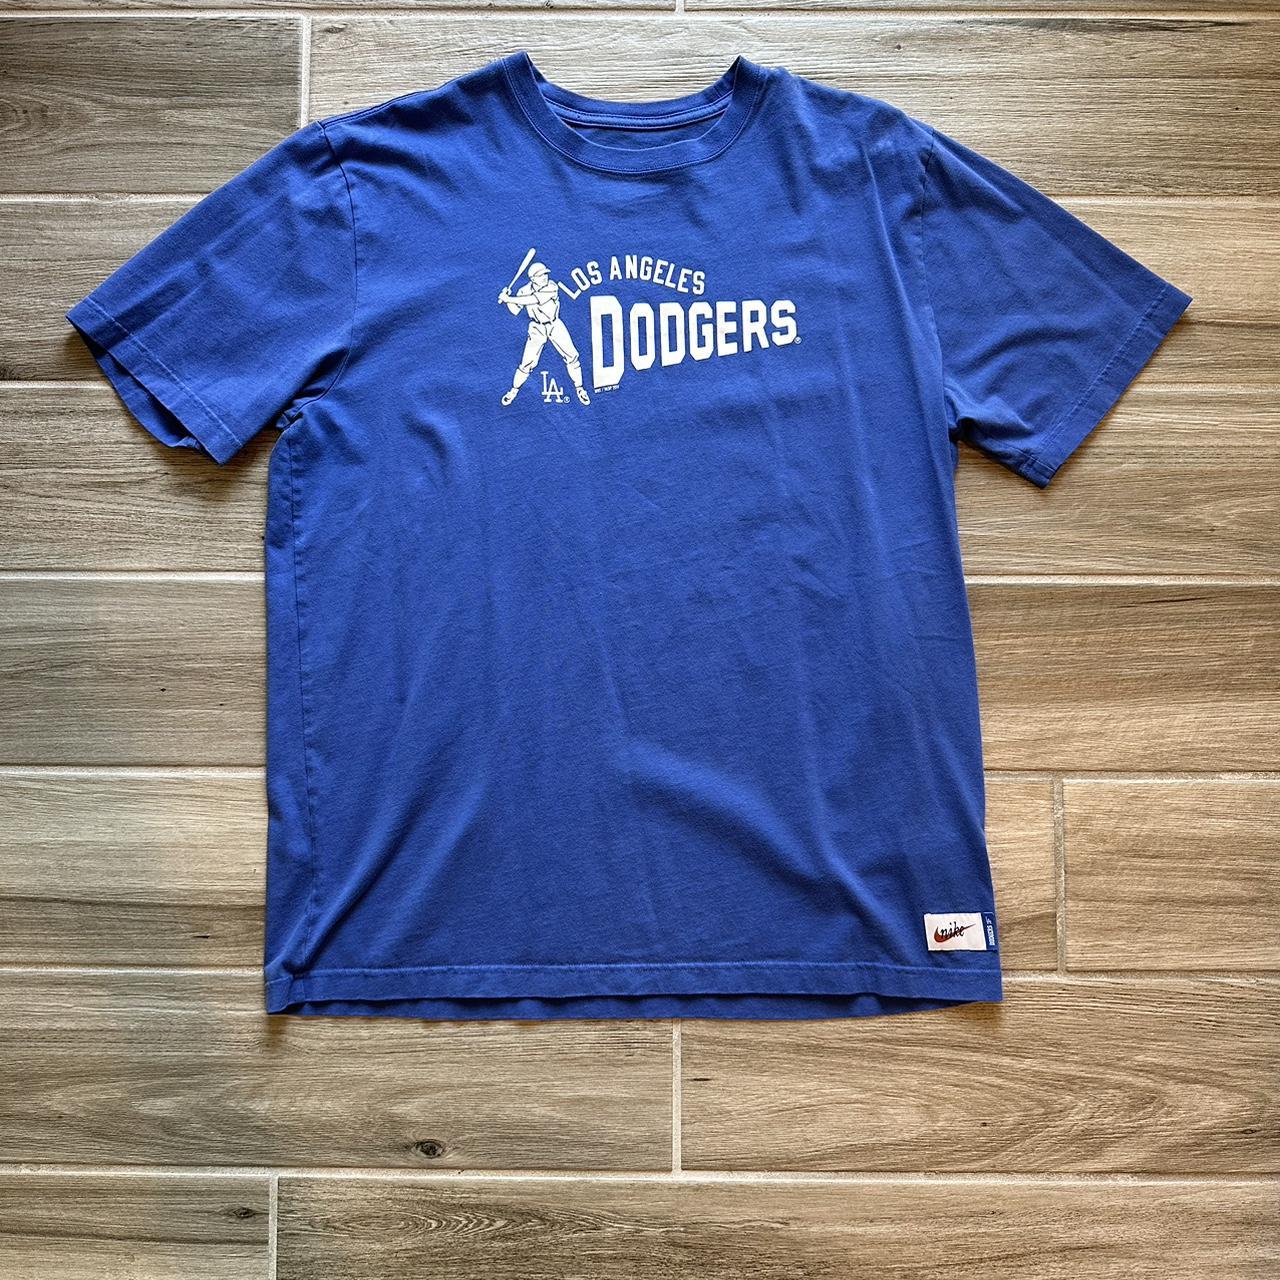 Blue New XL Nike Dodger Shirt